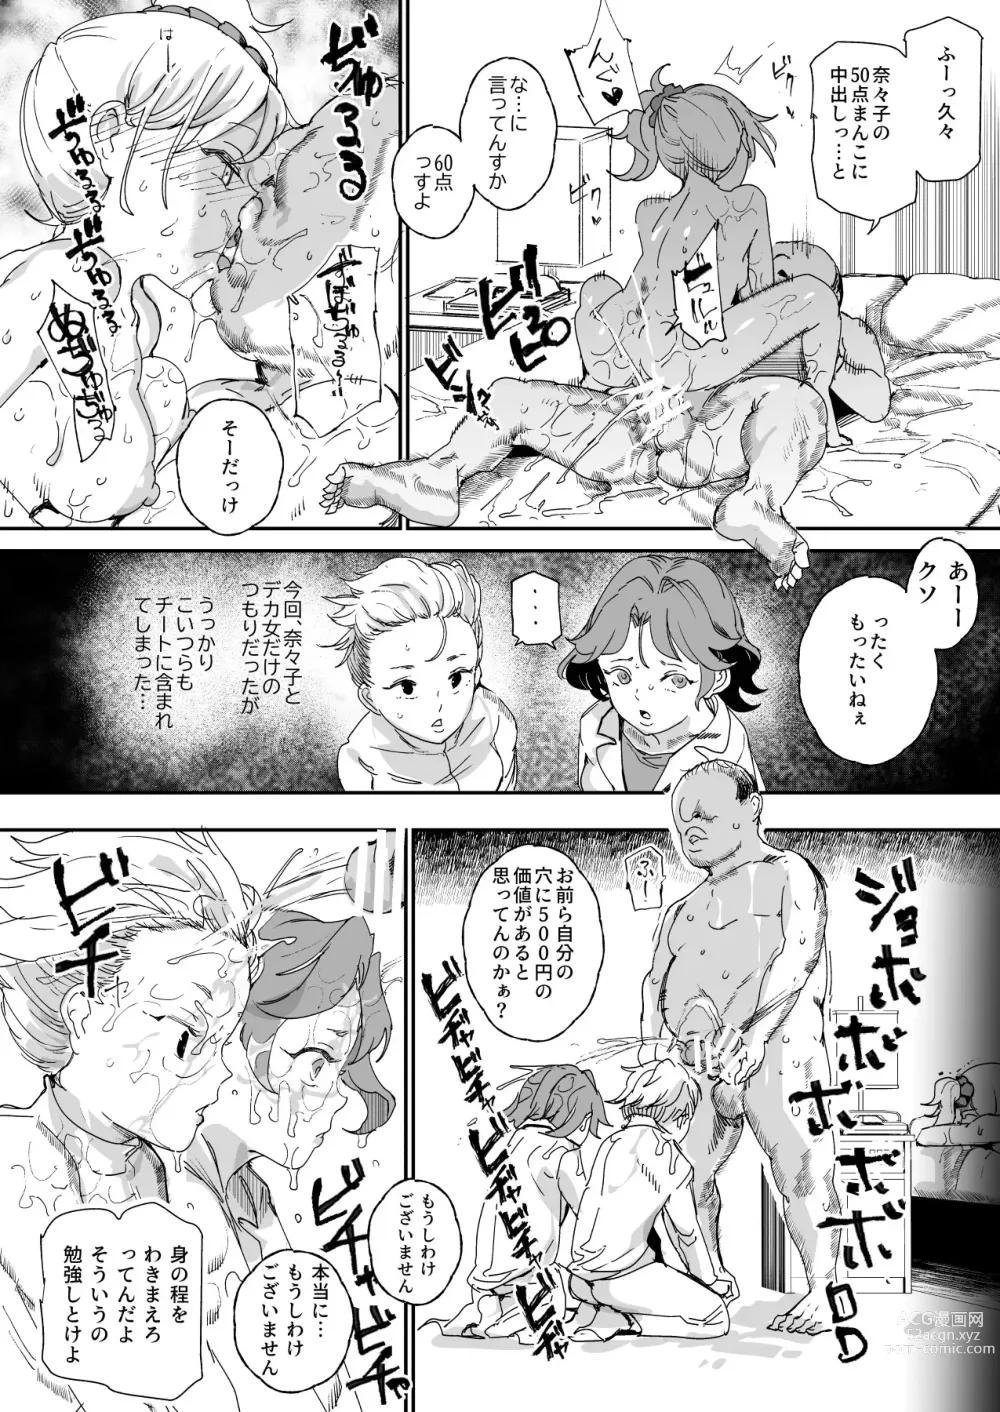 Page 40 of doujinshi 500-en de Baishun Kakutei Cheat